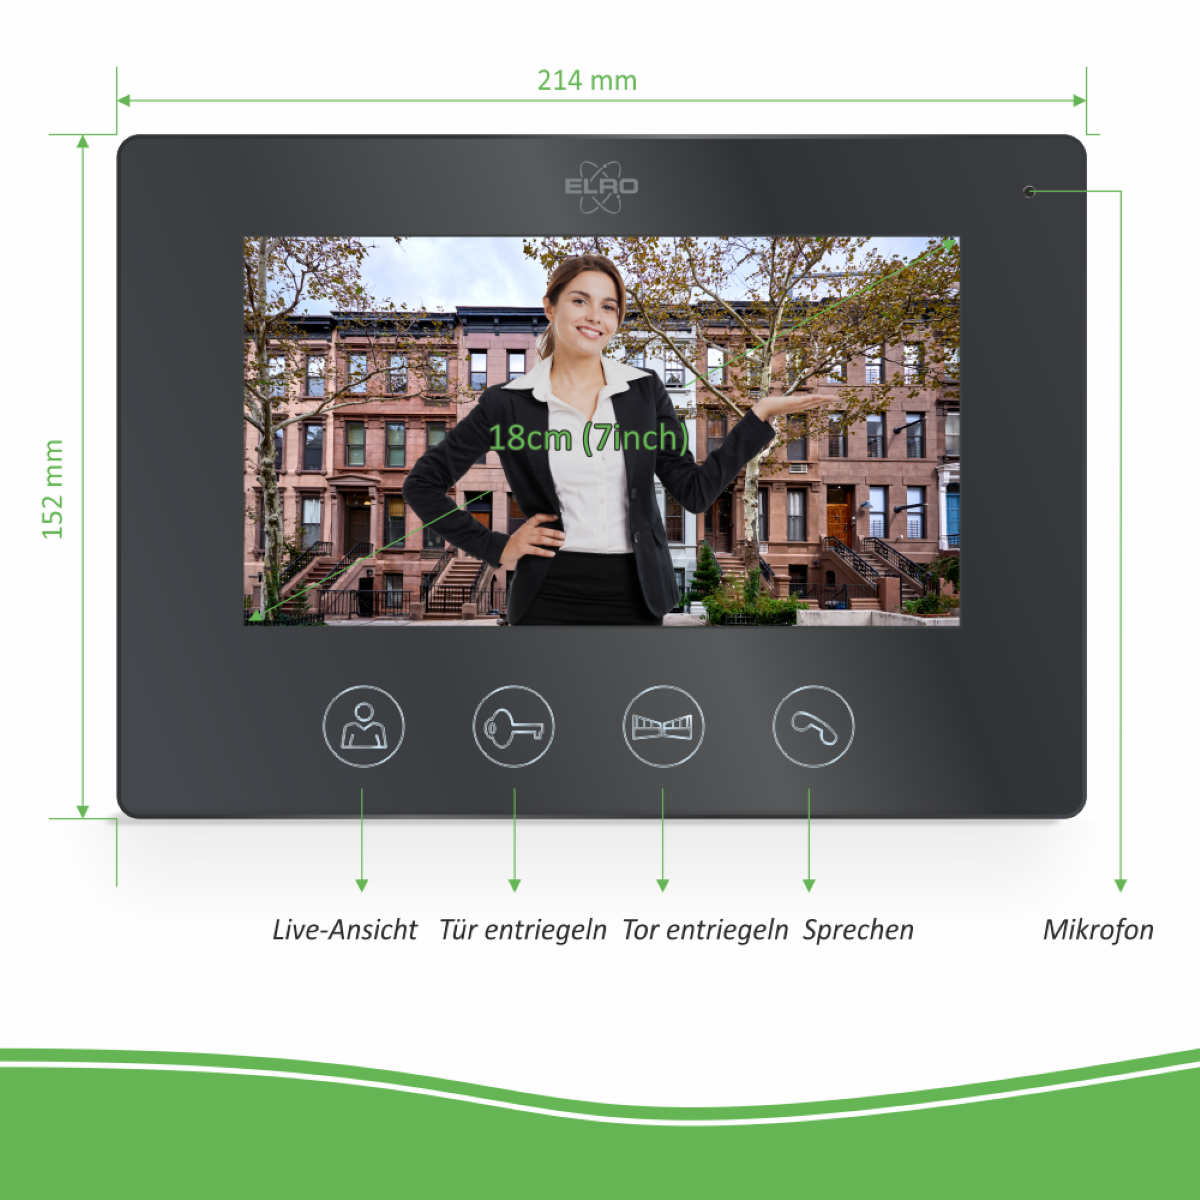 ELRO DV50 Verdrahtete Schwarz Türsprechanlage und App, Monitor mit